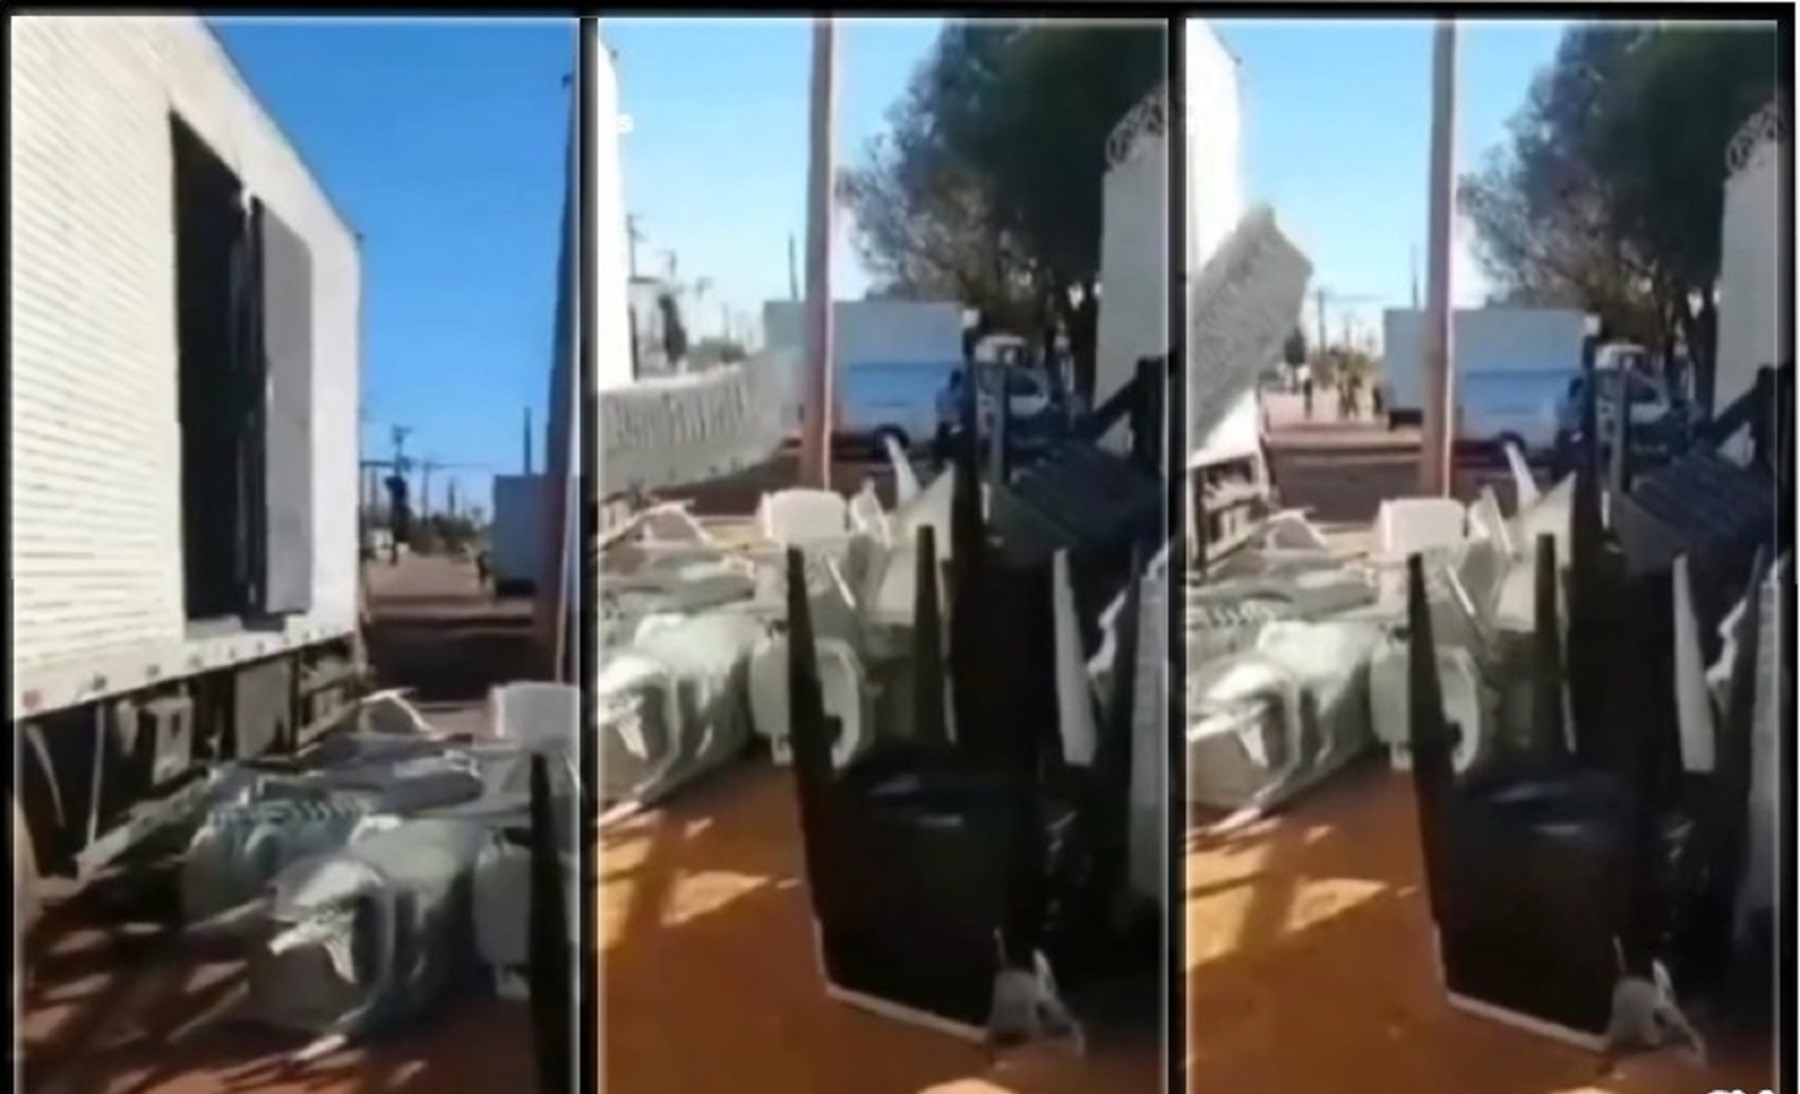 Caminhoneiro descarrega carga em frente a estabelecimento em Palmas (TO)